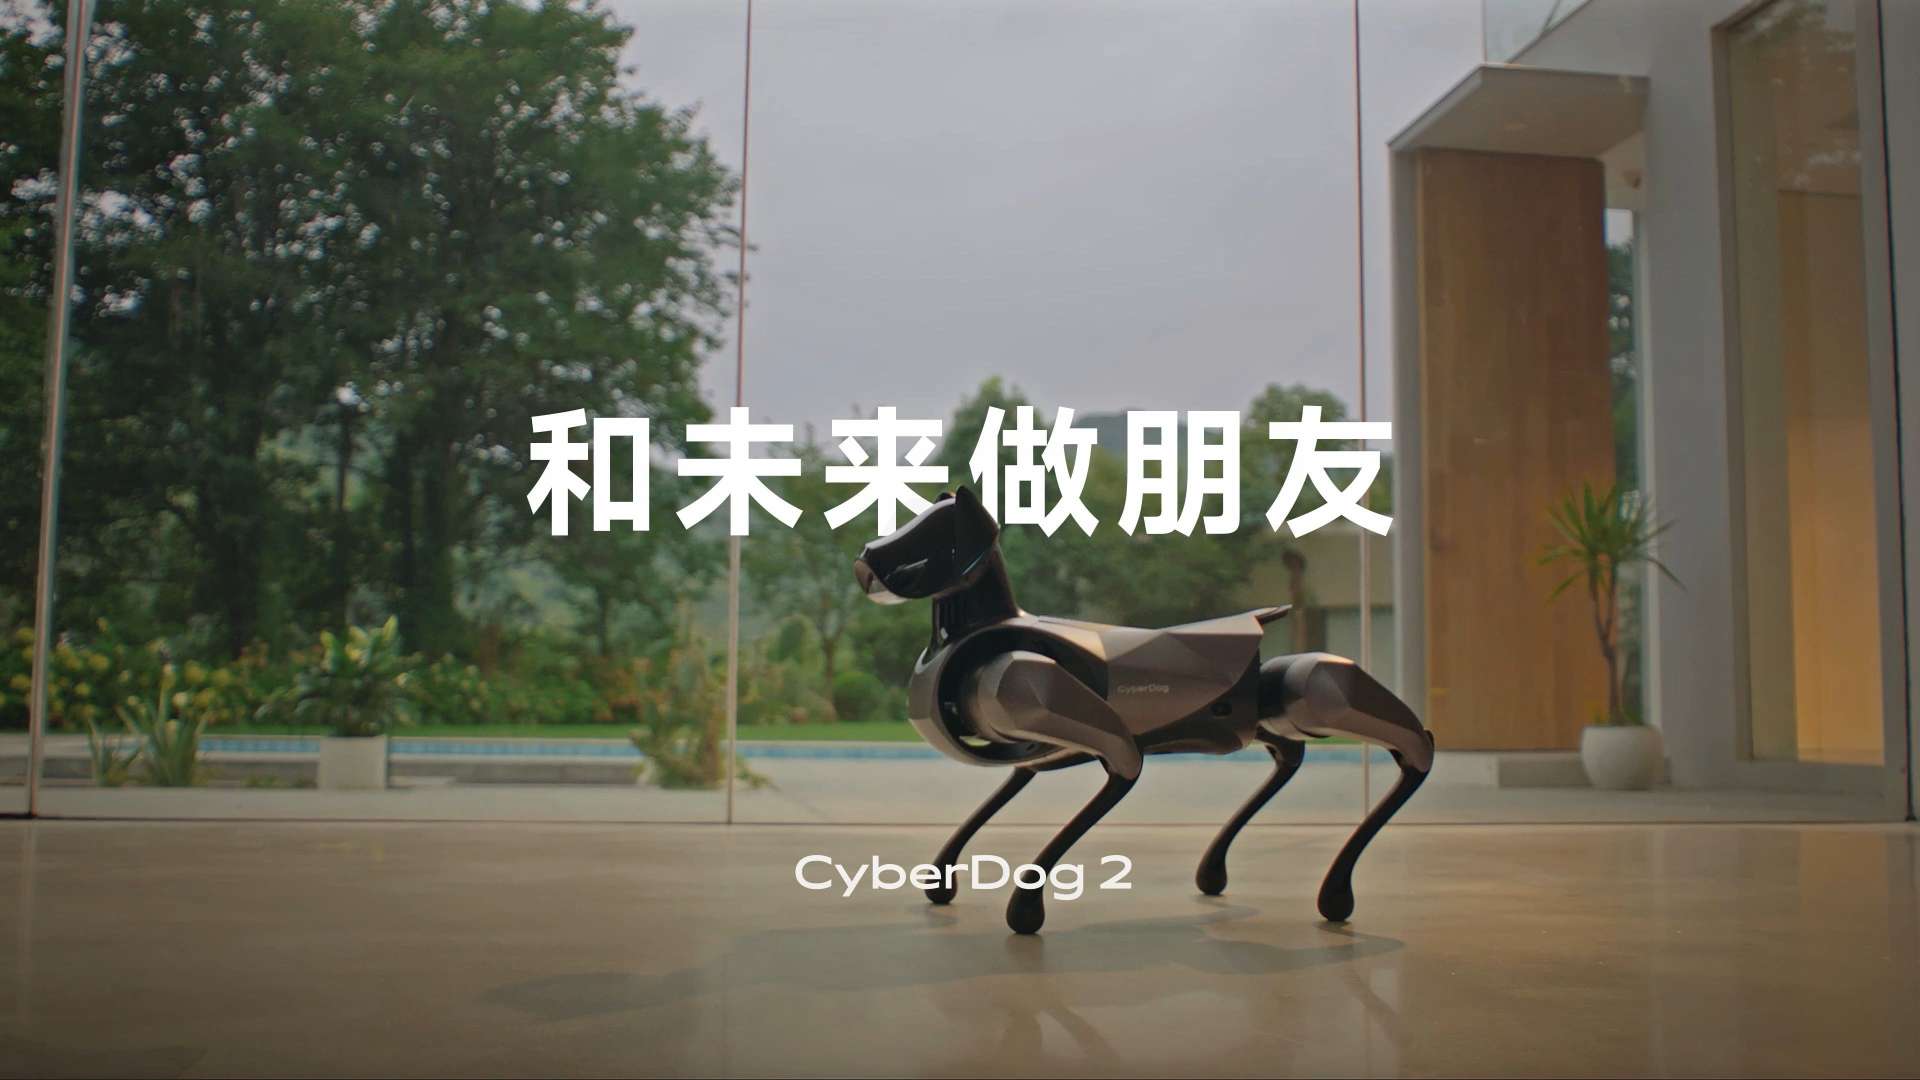 Xiaomi CyberDog2  和未来做朋友